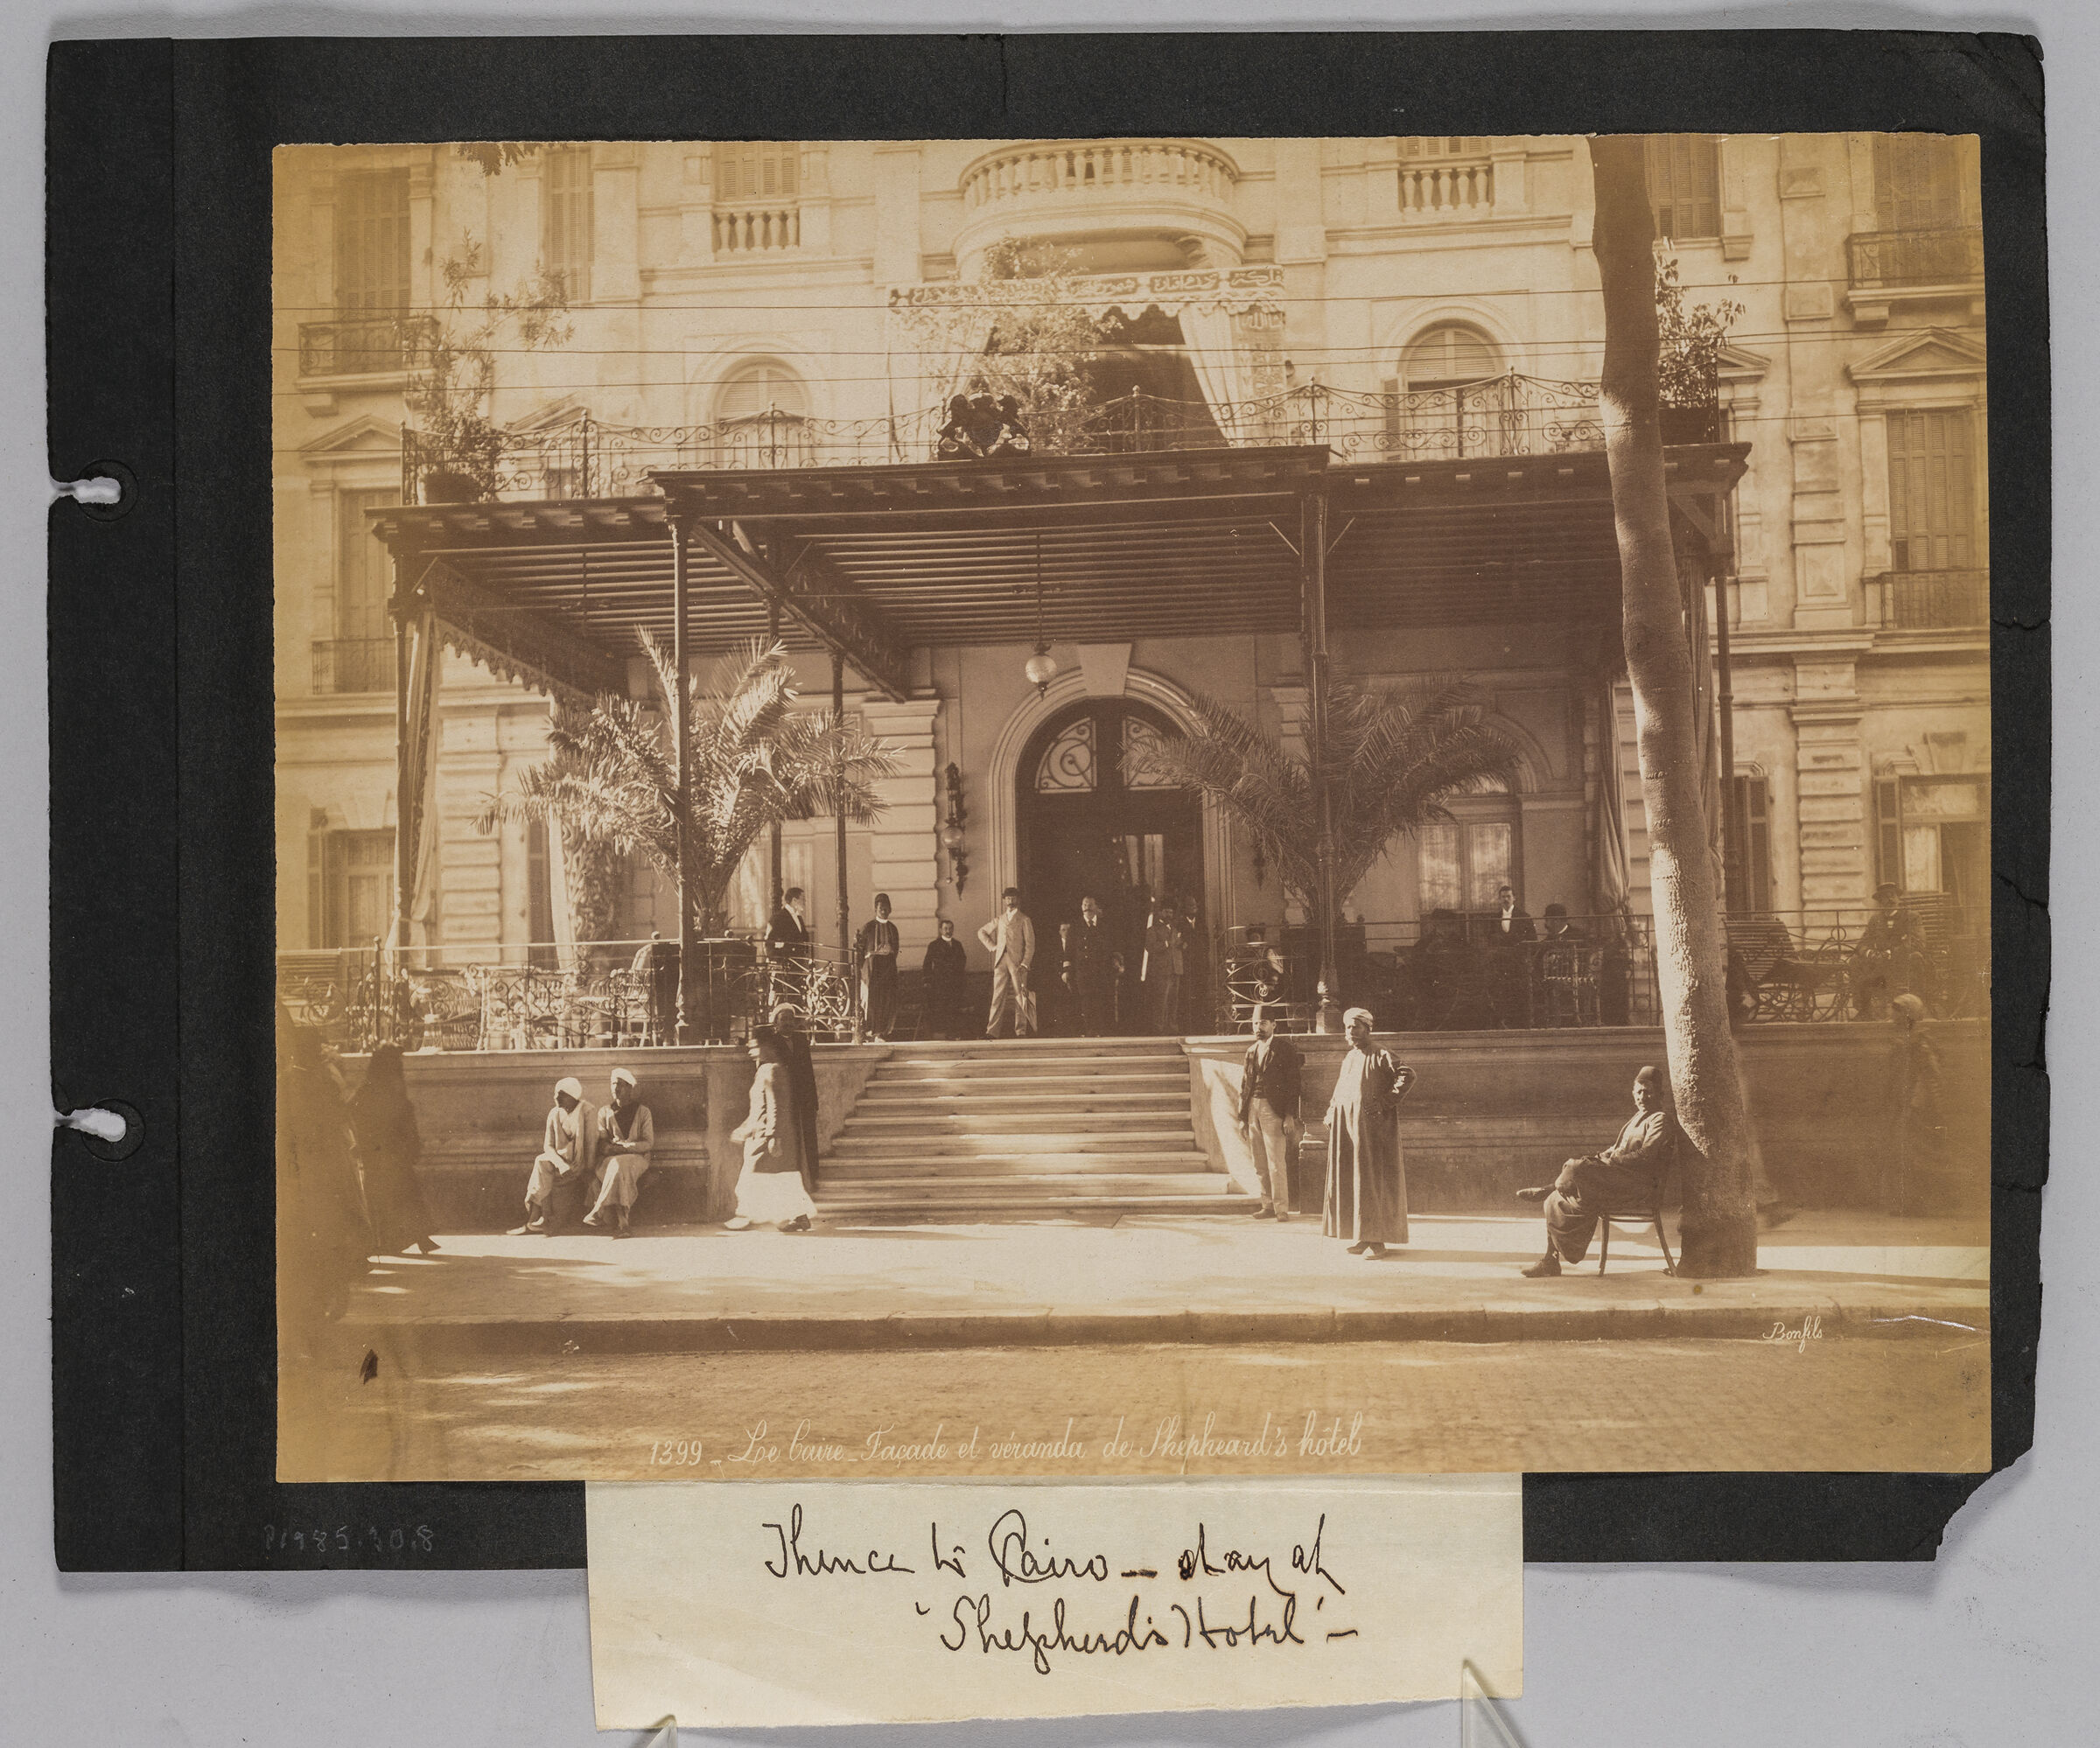 Cairo, Facade And Veranda At Shepheard's Hotel